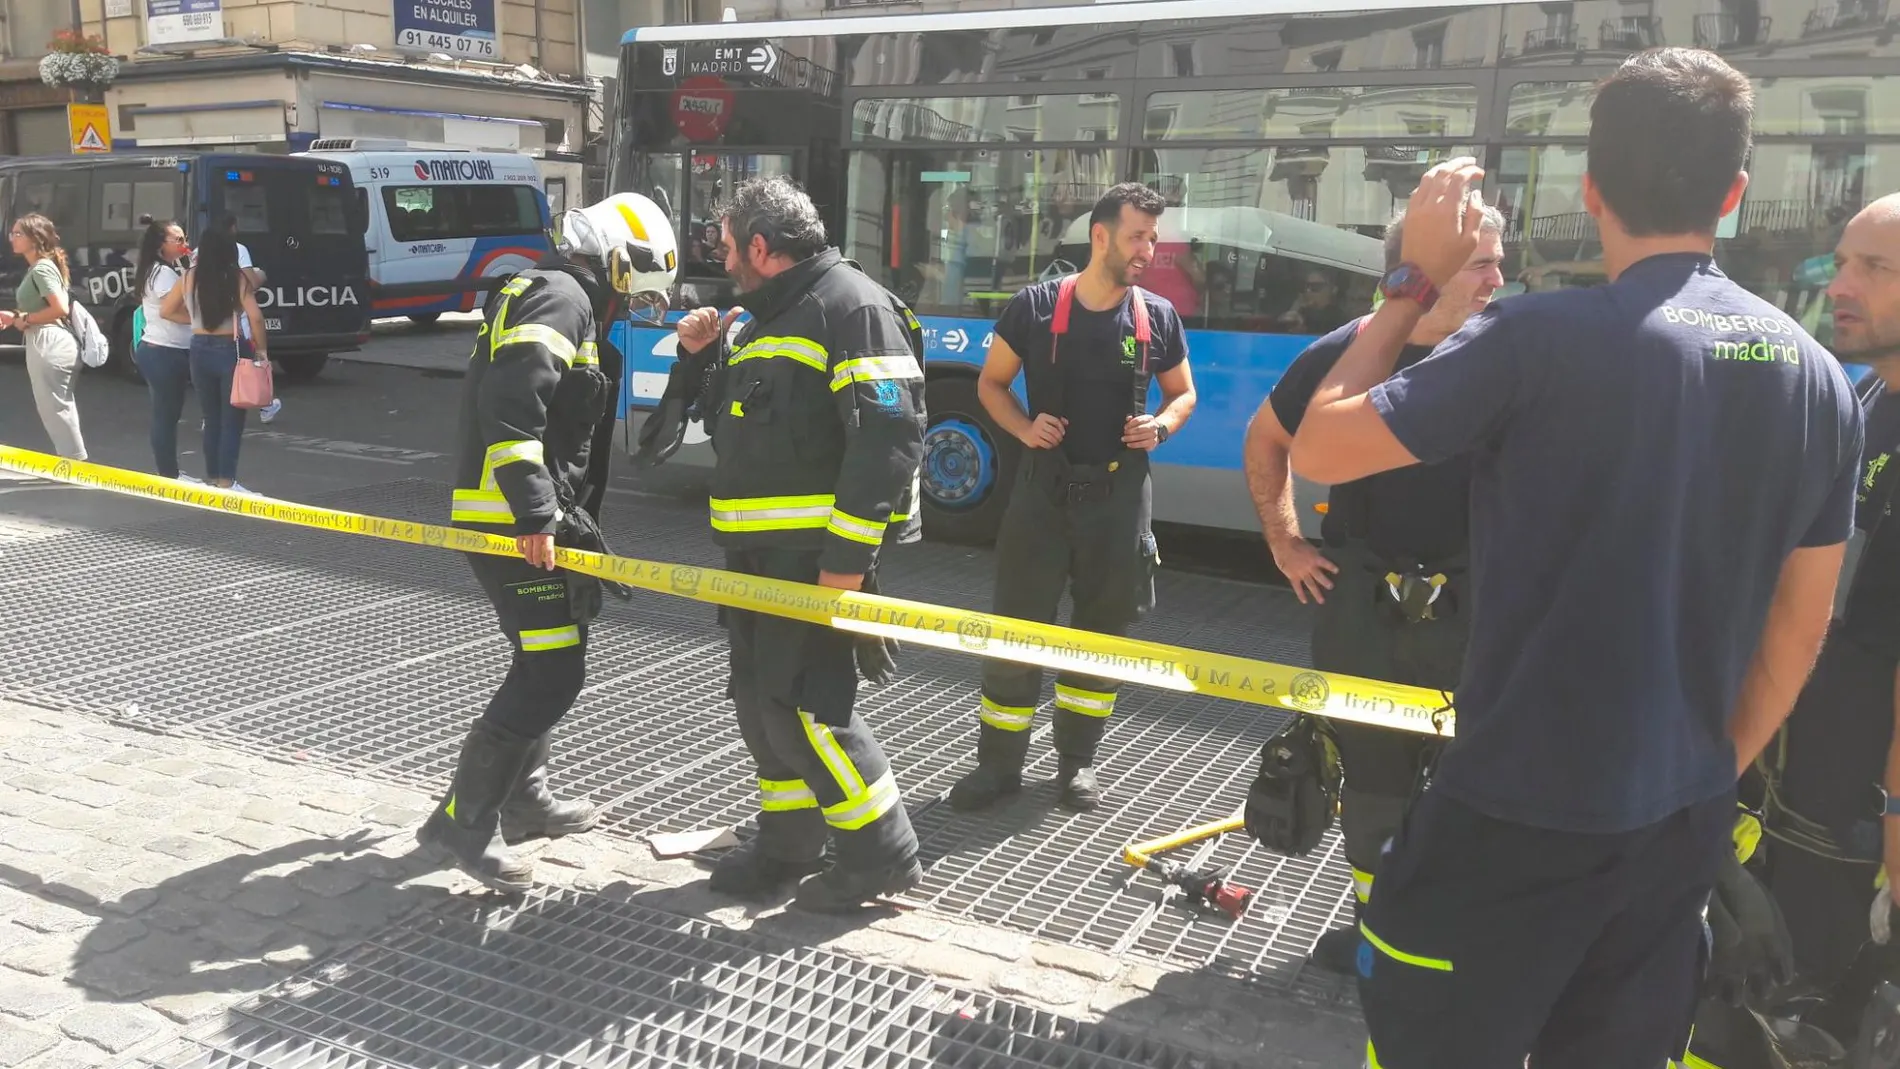 Los bomberos en la Puerta del Sol/@EmergenciasMad